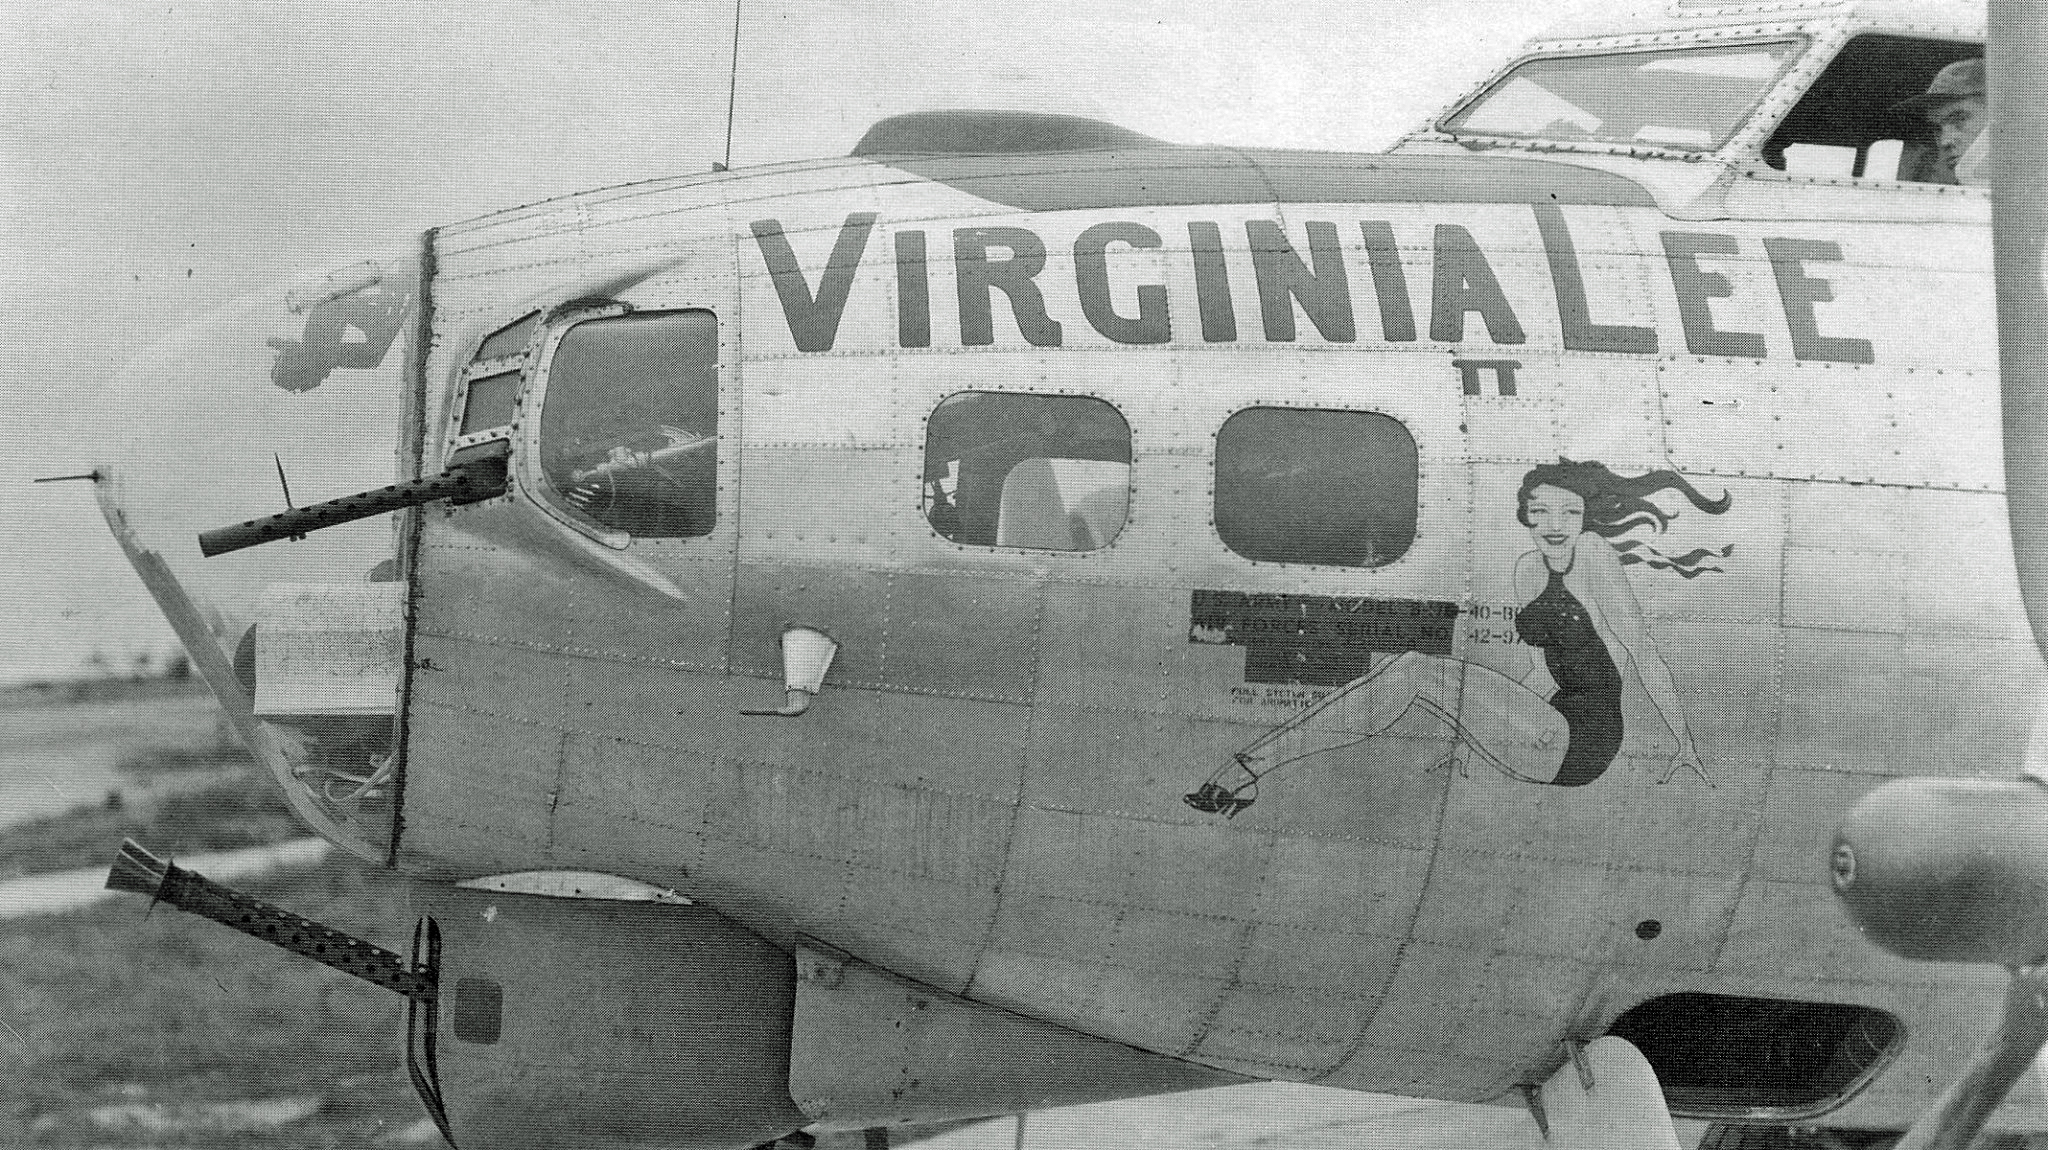 B-17 #42-97092 / Virginia Lee II aka Heel Der Fuhrer